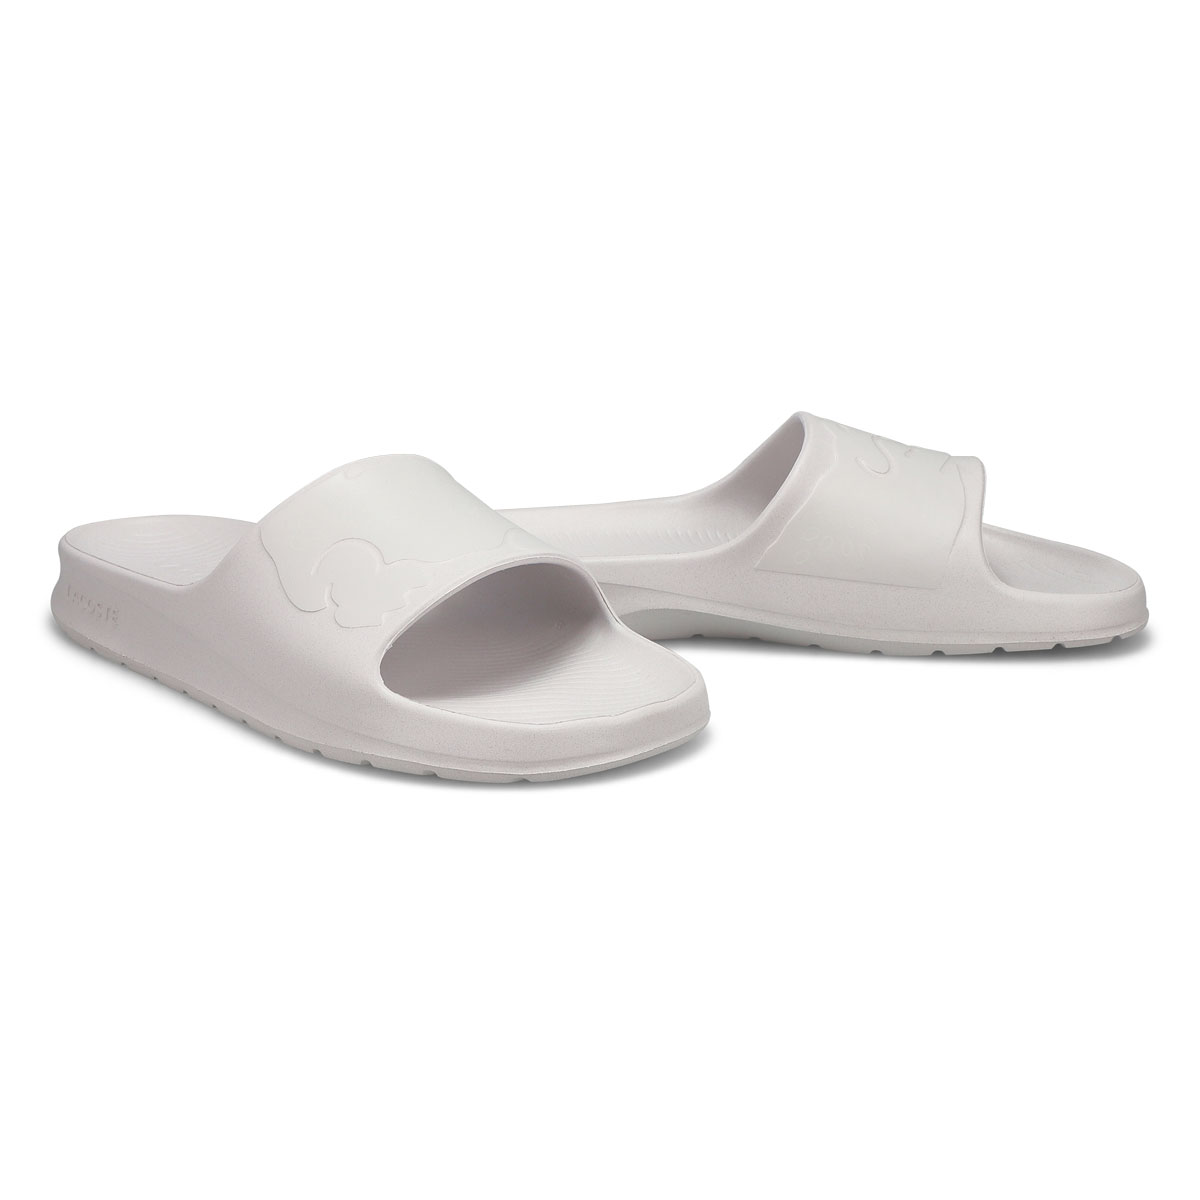 Men's Croco 2.0 Slide Sandal - White/ Off White